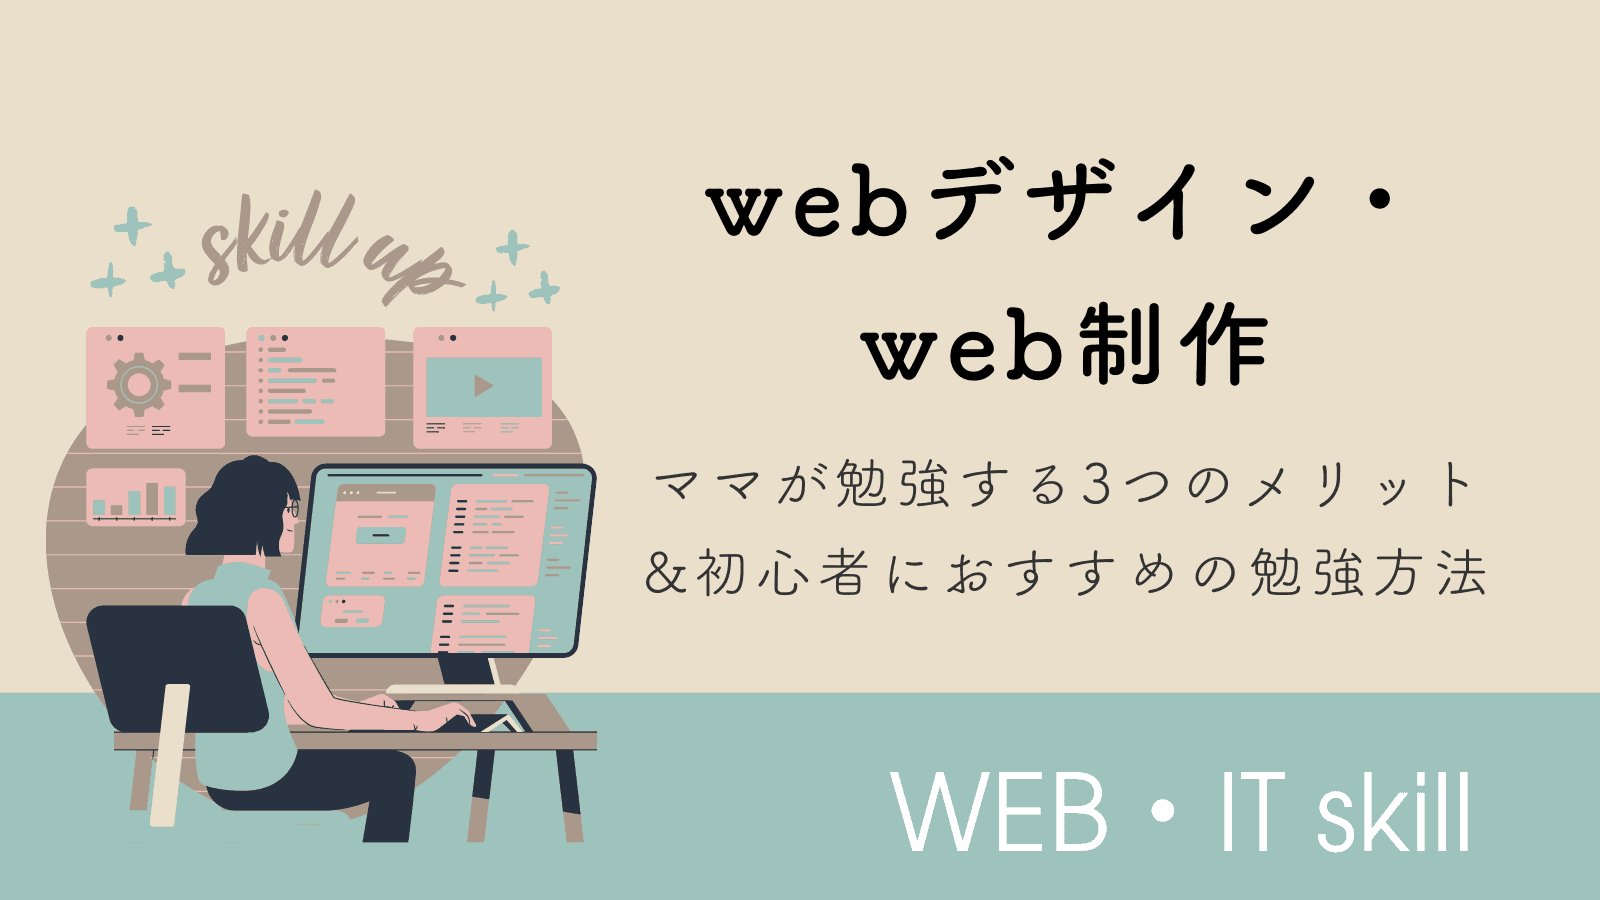 ママがwebデザイン・web制作を勉強する3つのメリットと初心者におすすめの勉強方法